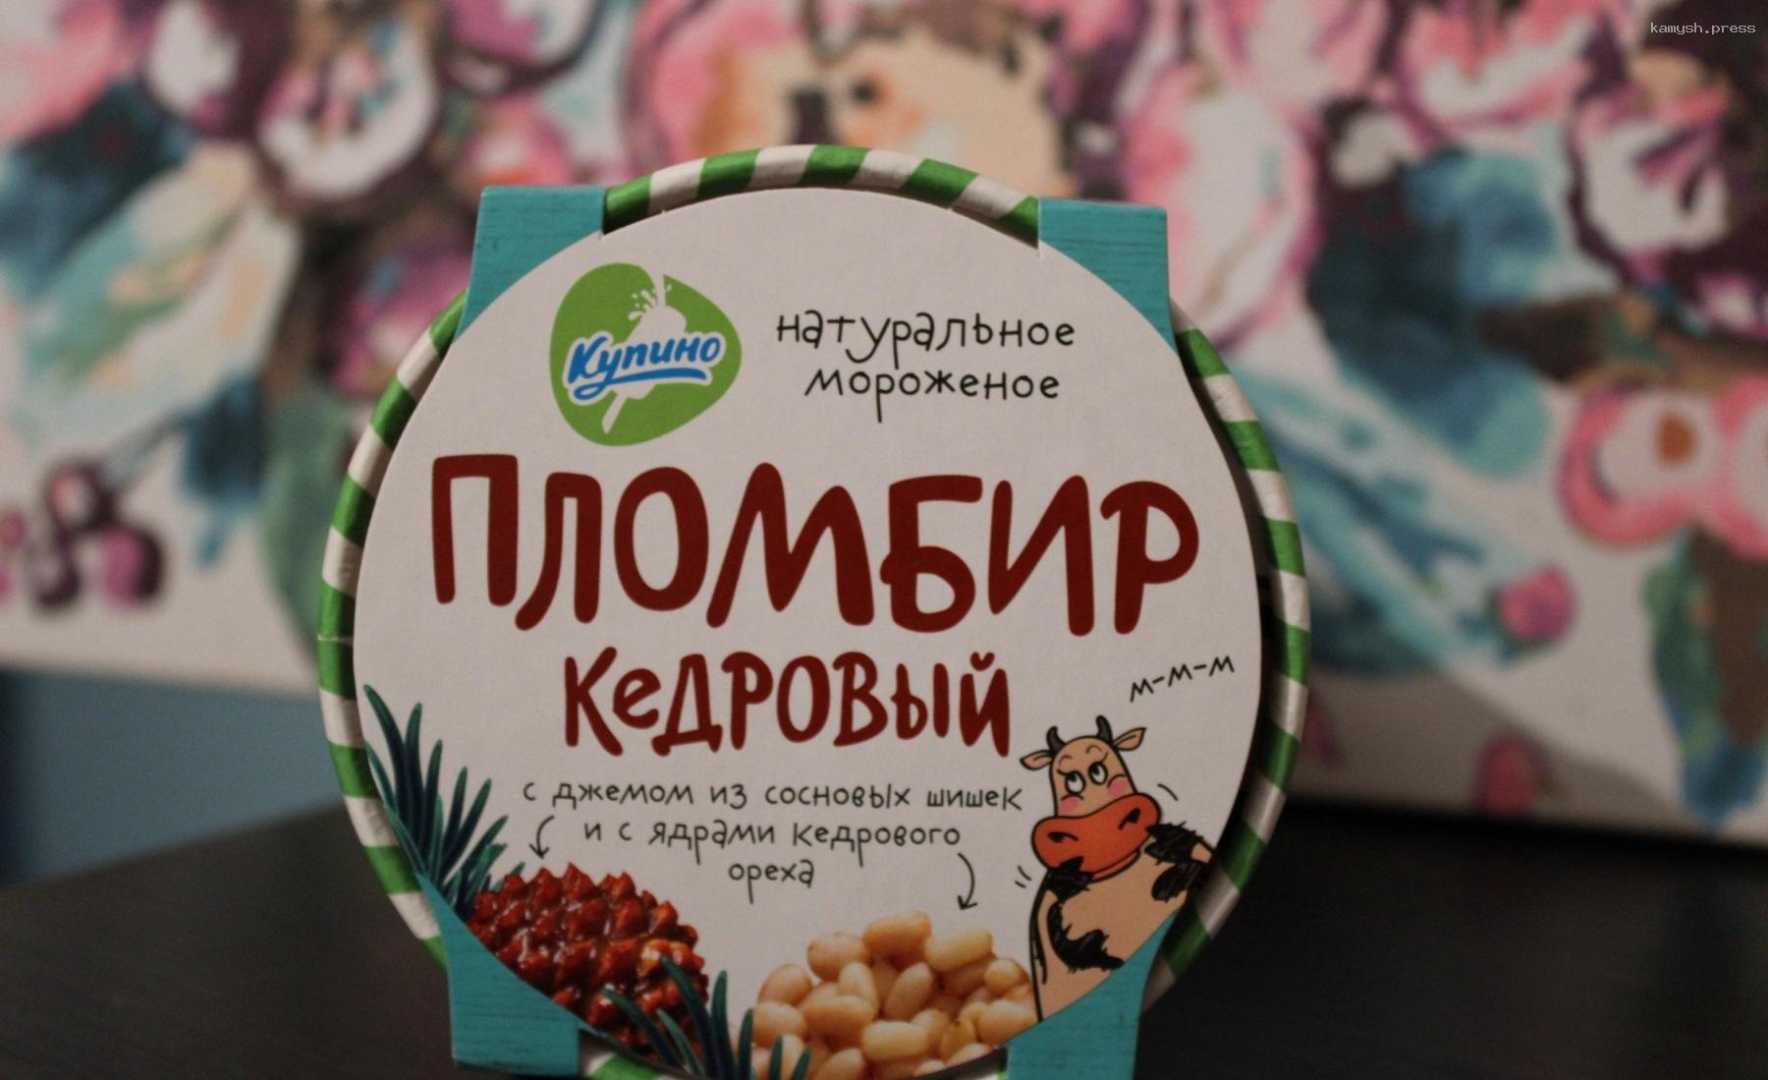 Новосибирский кедровый пломбир вошел в топ необычного мороженного от российских производителей